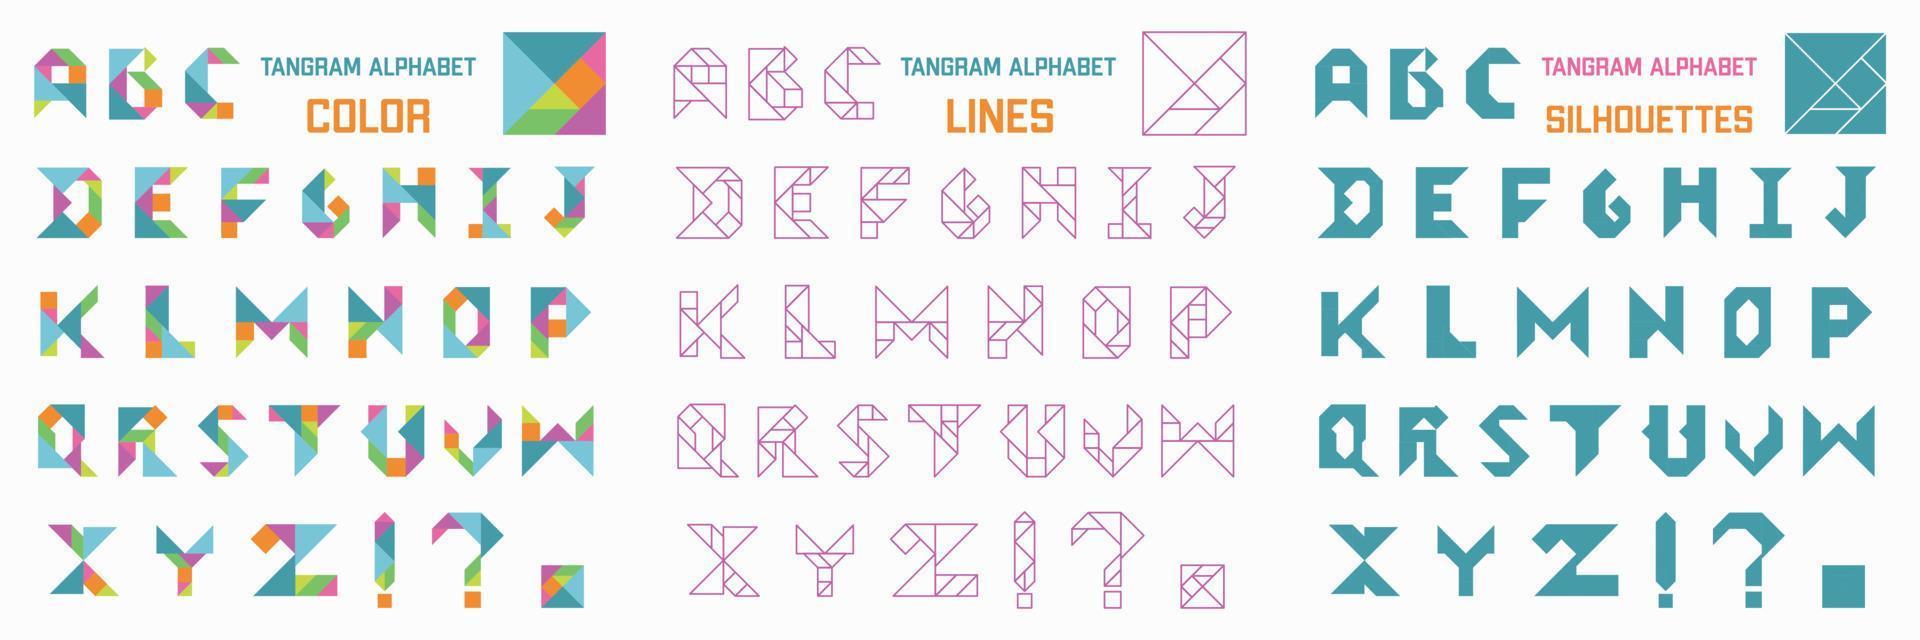 jeu de puzzle tangram pour les enfants. sertie d'alphabet anglais. couleur tangram, silhouettes et lignes. vecteur